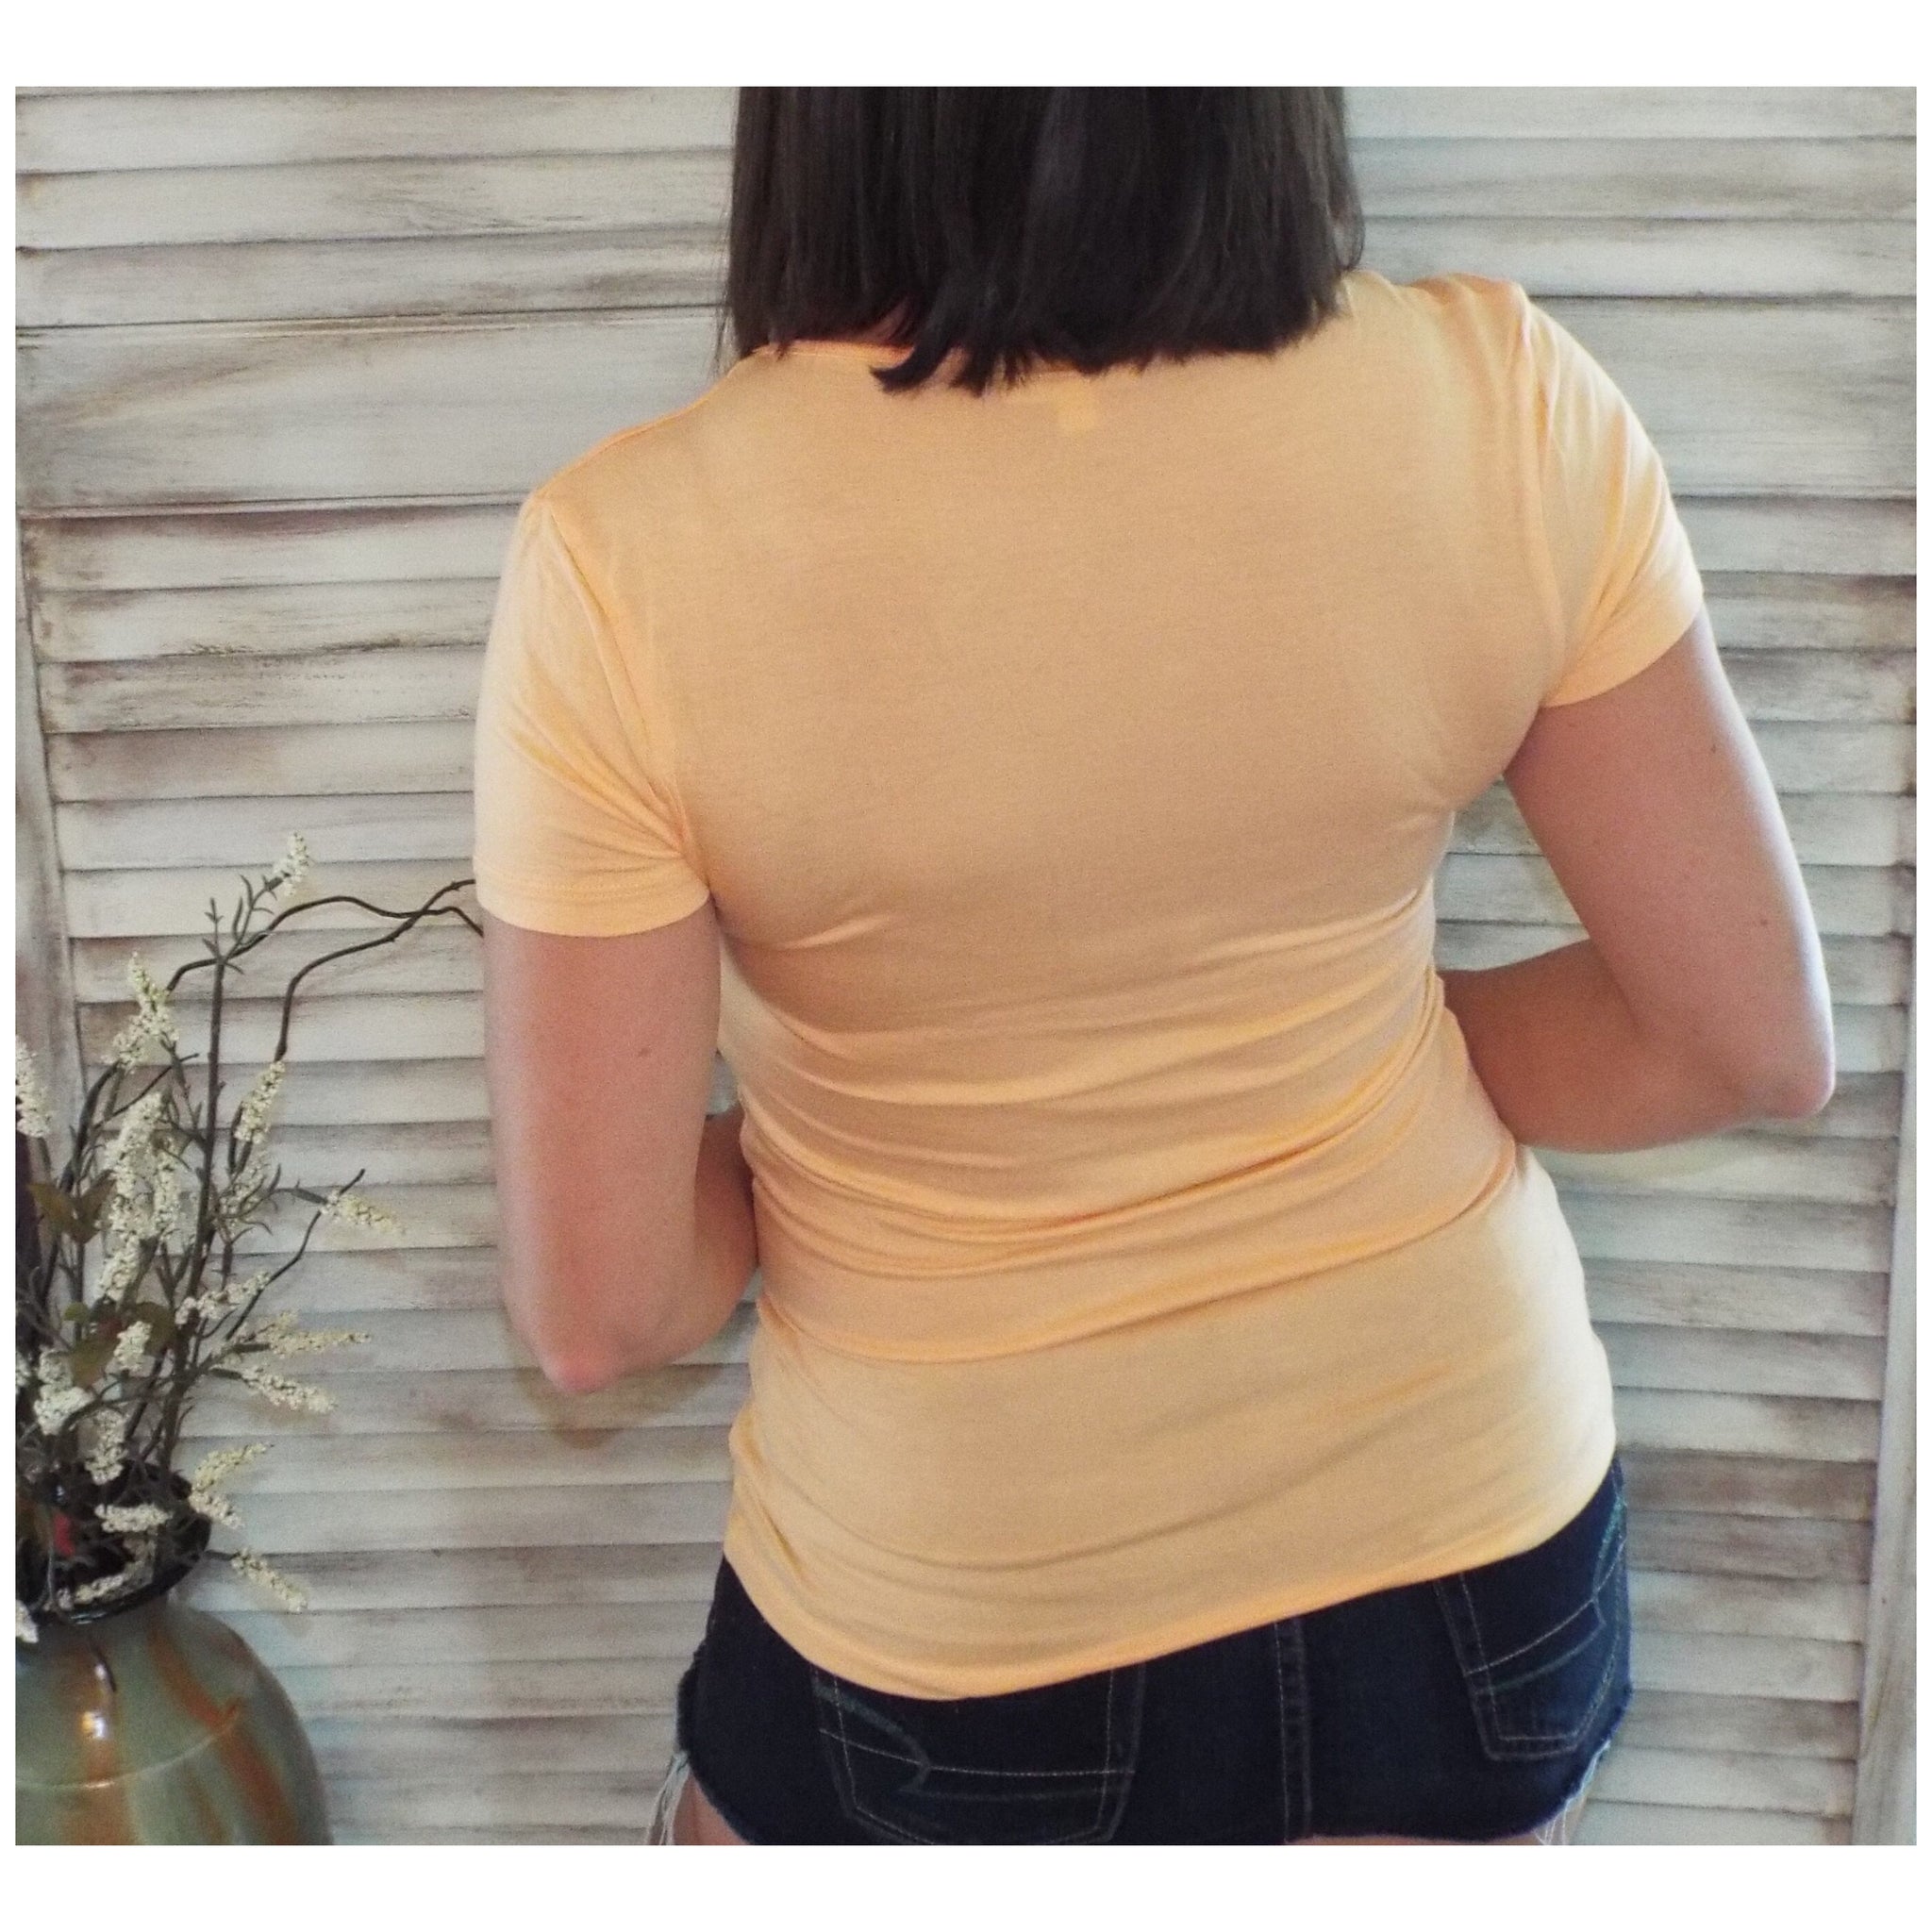 Sexy Loose Tissue Scoop Neck Boyfriend Tee Shirt Melange Light Orange S/M/L